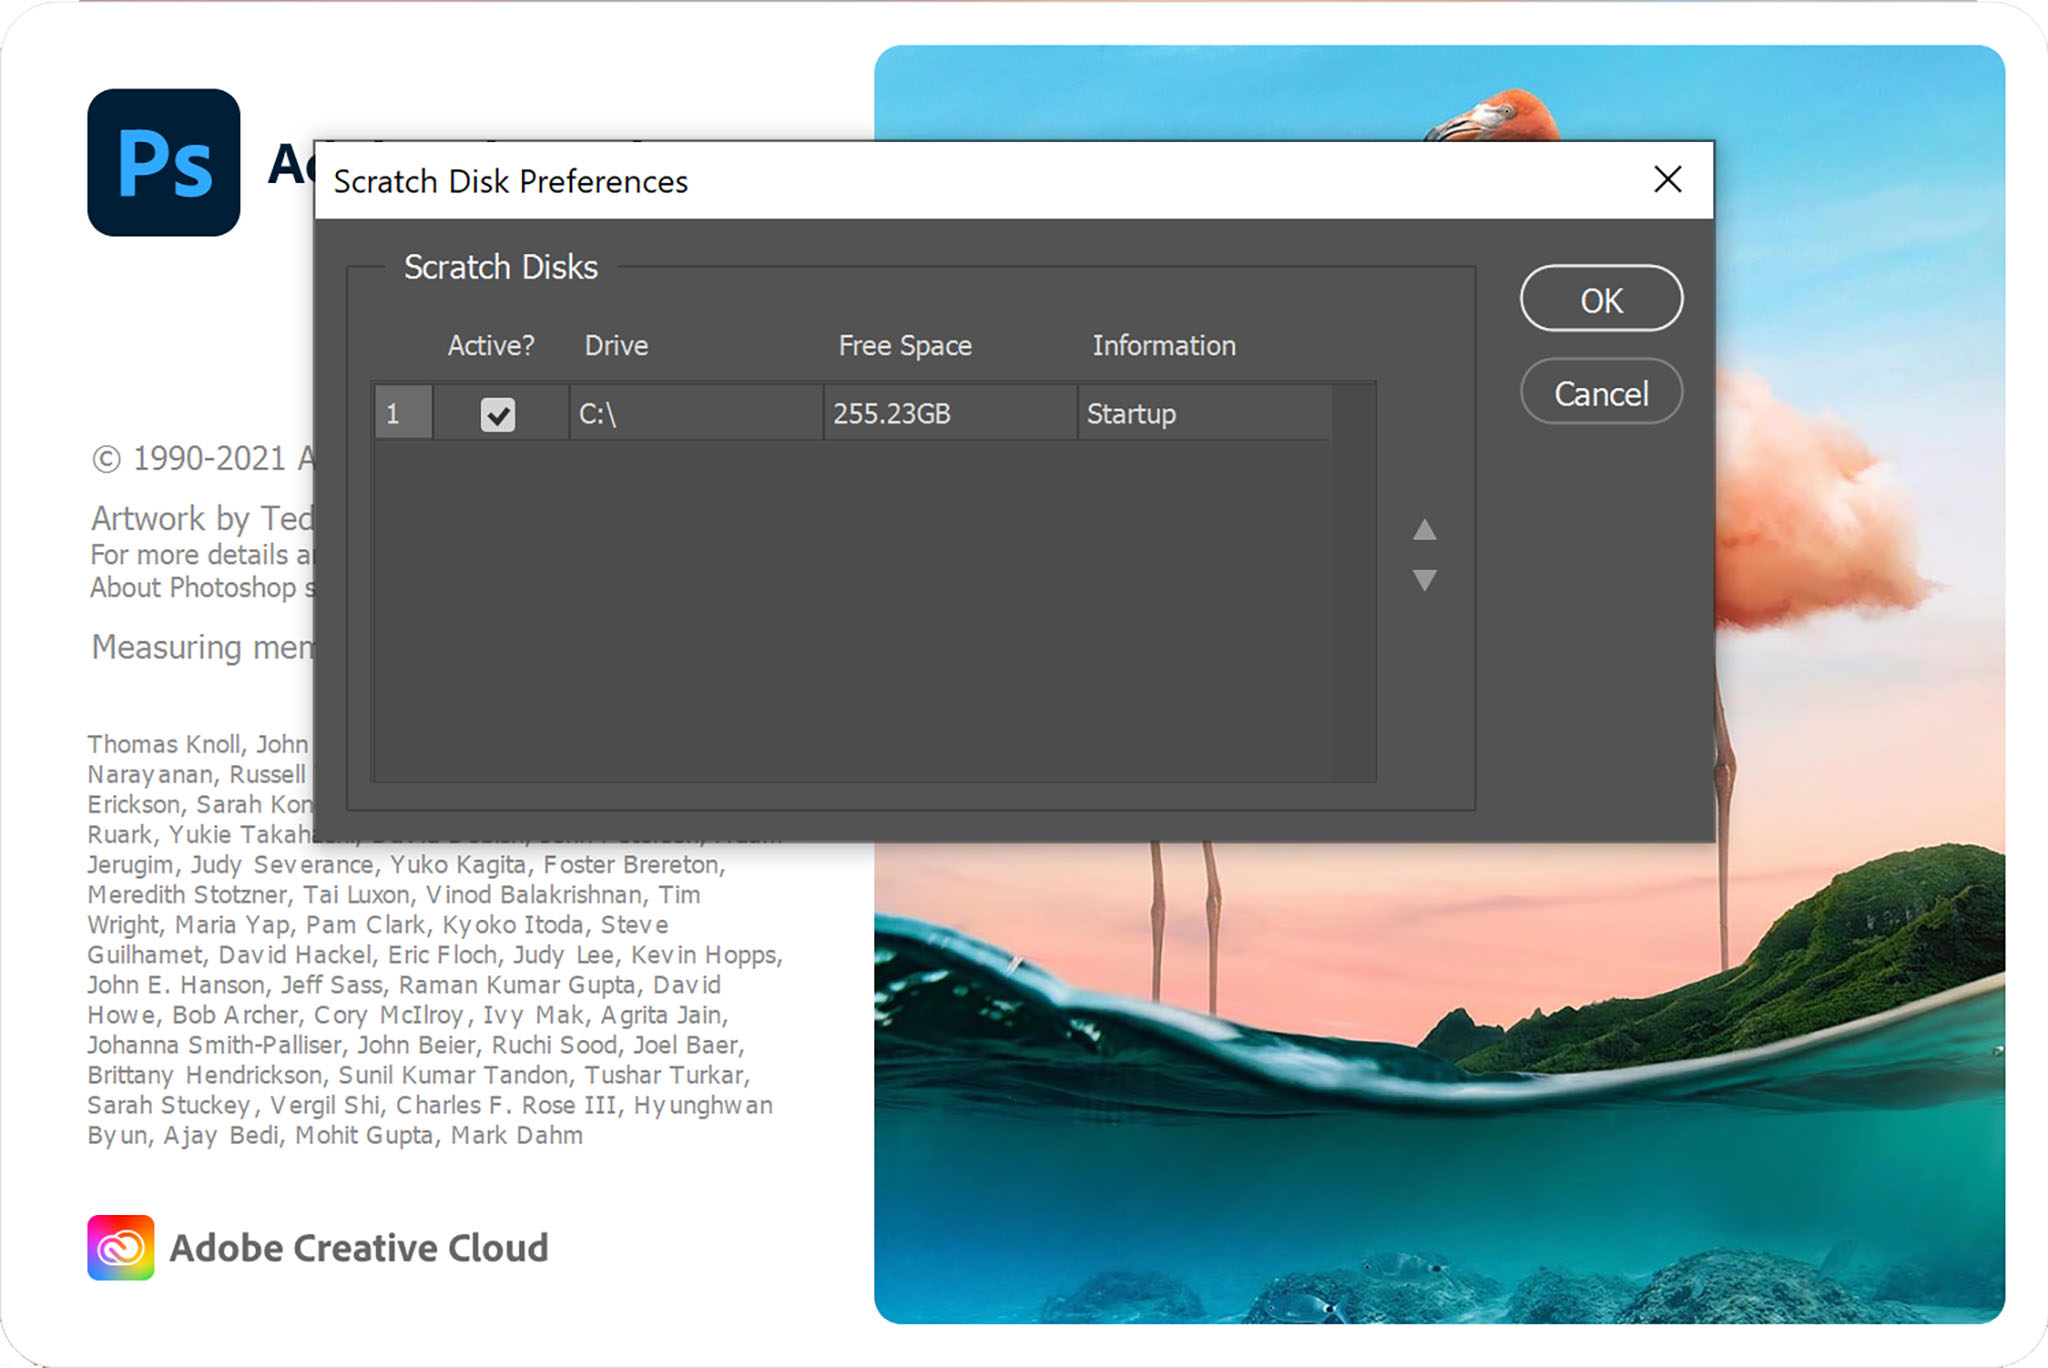 photoshop scratch disk full mac